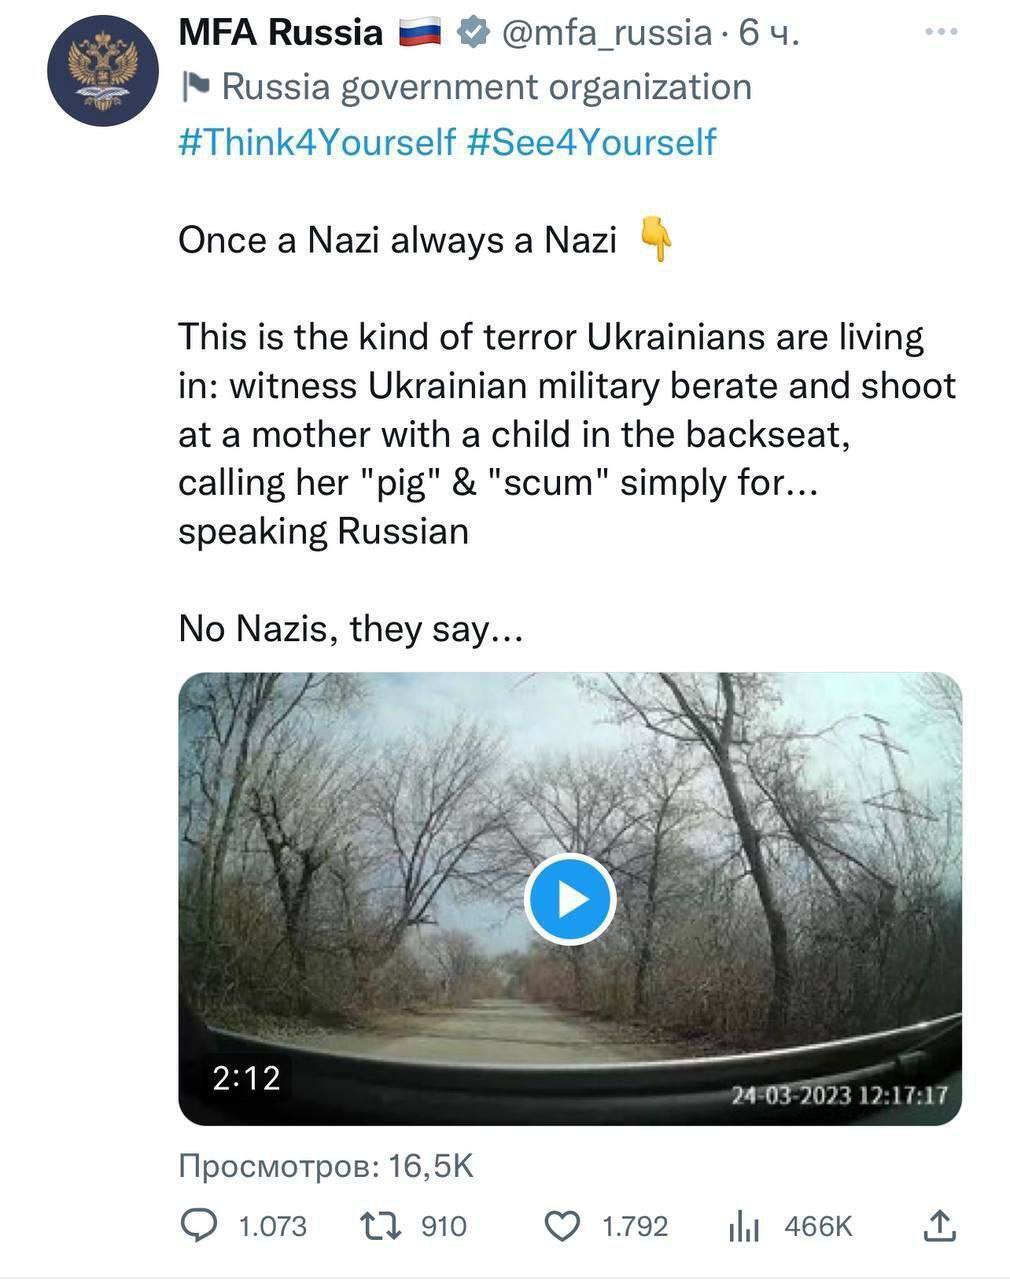 Наглядная история о том, как создается ложь Кремля об "украинских нацистах"